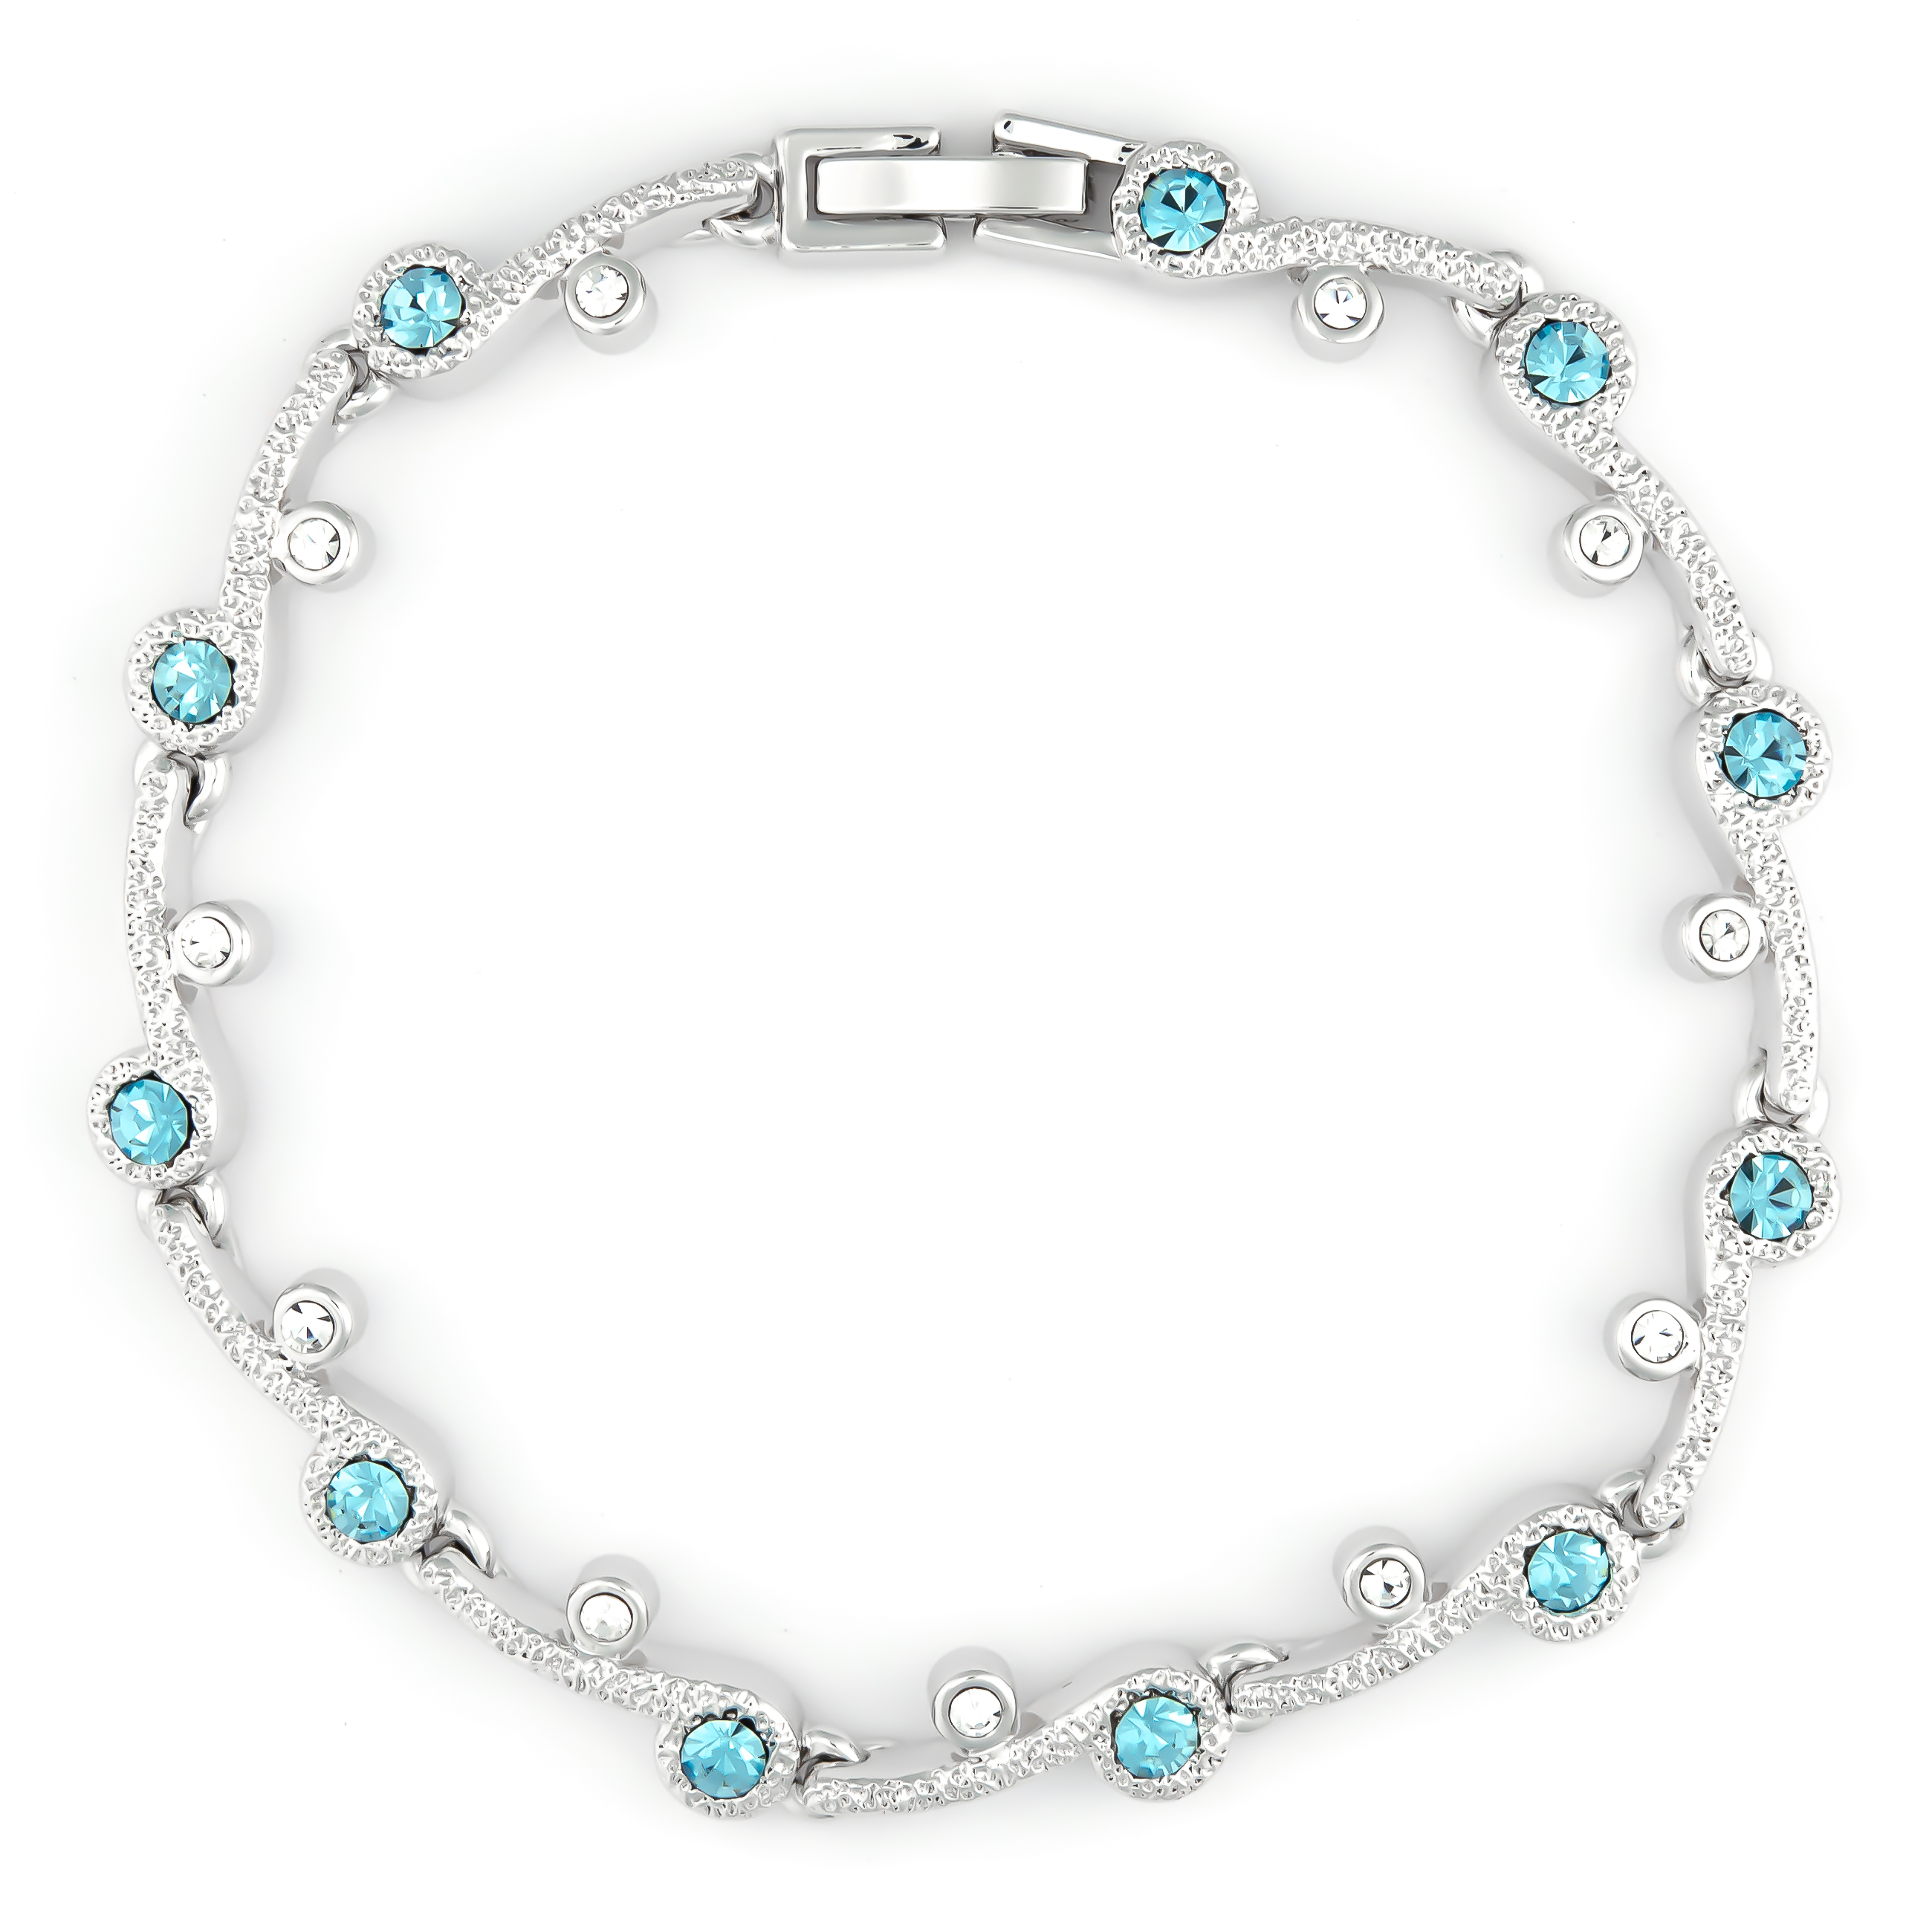 K.V. Fuchs Design Schmuck Damen Armband in silber mit Zirkonia in blau, weiß »22-02«